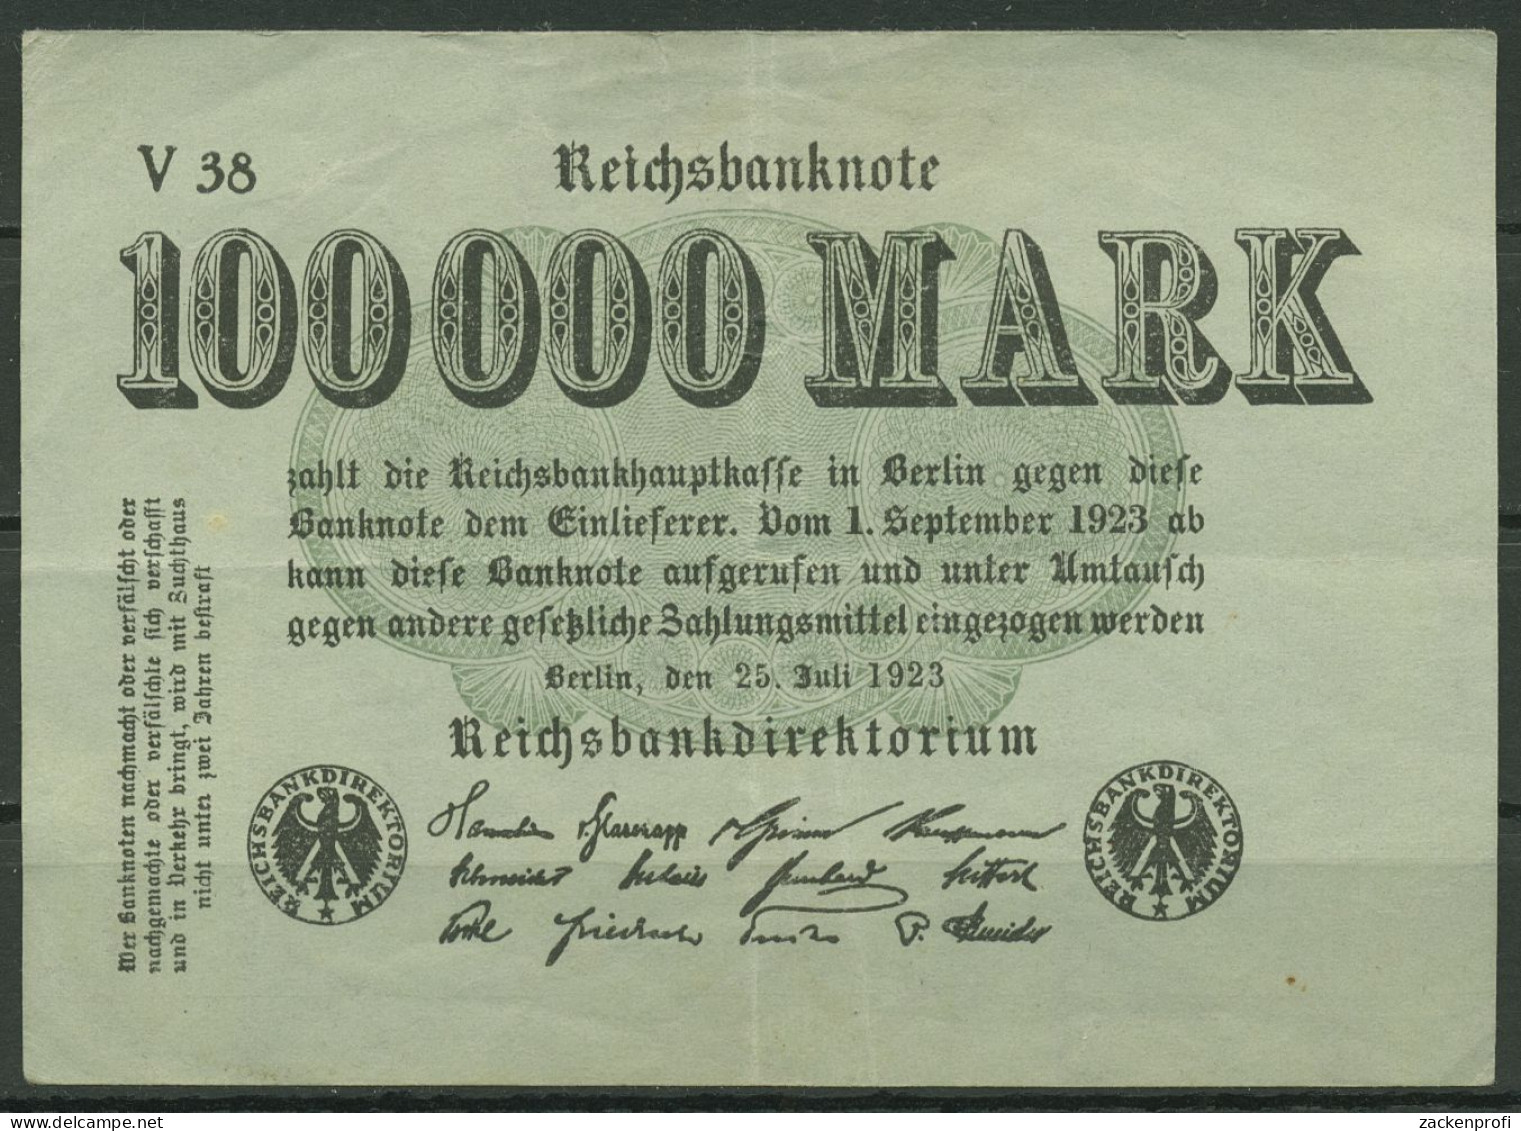 Dt. Reich 100000 Mark 1923, DEU-102b FZ V, Gebraucht (K1326) - 100.000 Mark